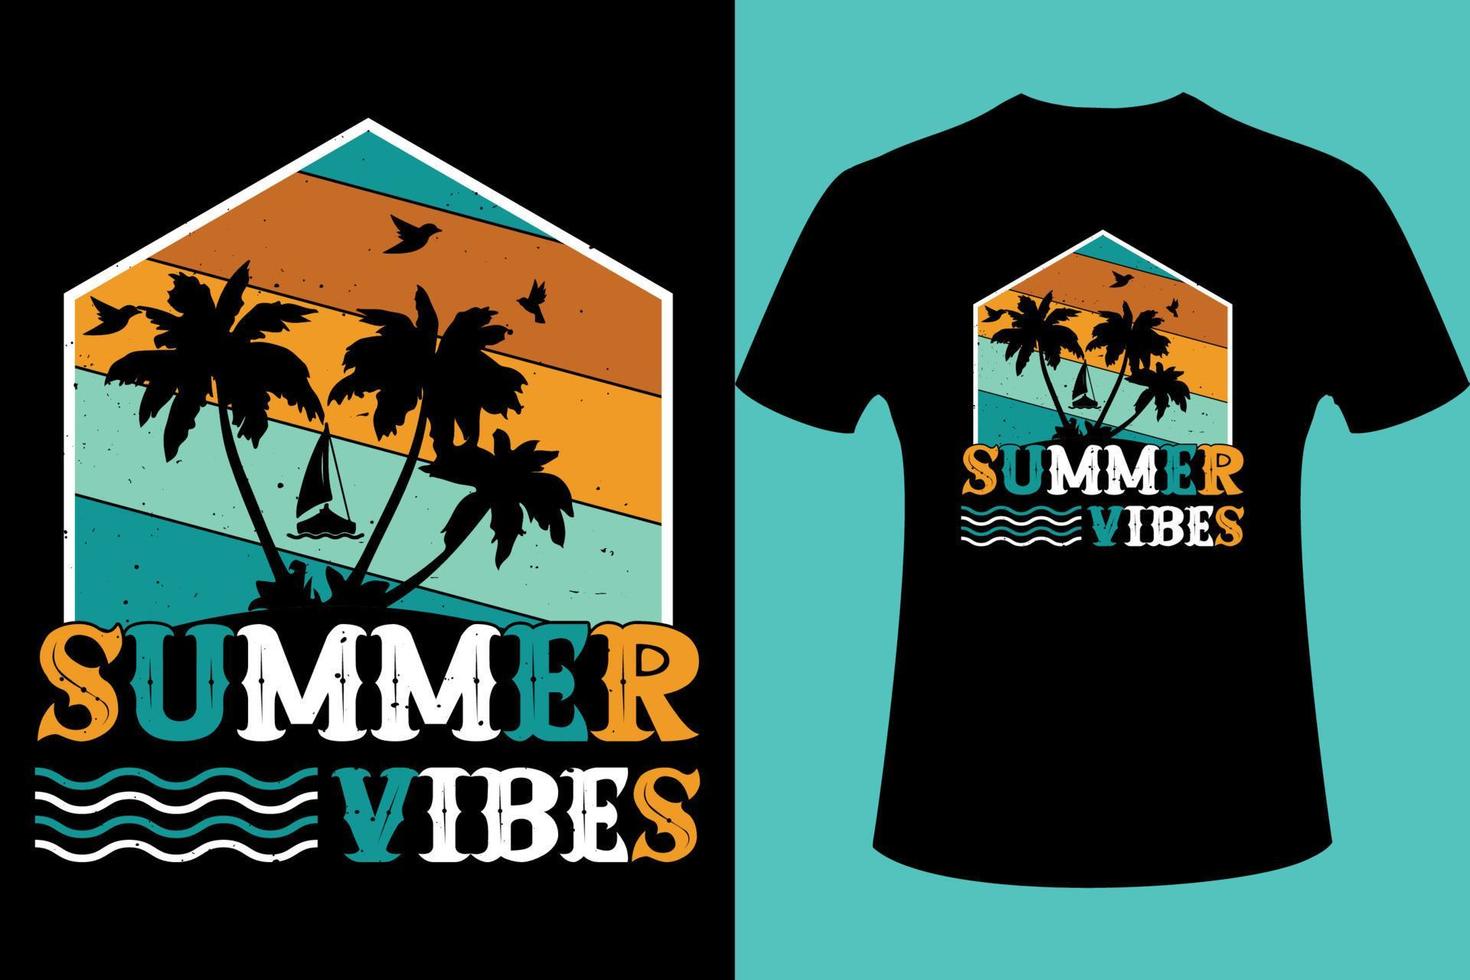 Summer vibes, summer svg, ai, eps, jpeg, Png, dxf, Pdf, Happy Camper SVG, Hiking Mountains Campfire Tent T-Shirt, instant download, Camp life SVG, Digital file. Illustration vector design.